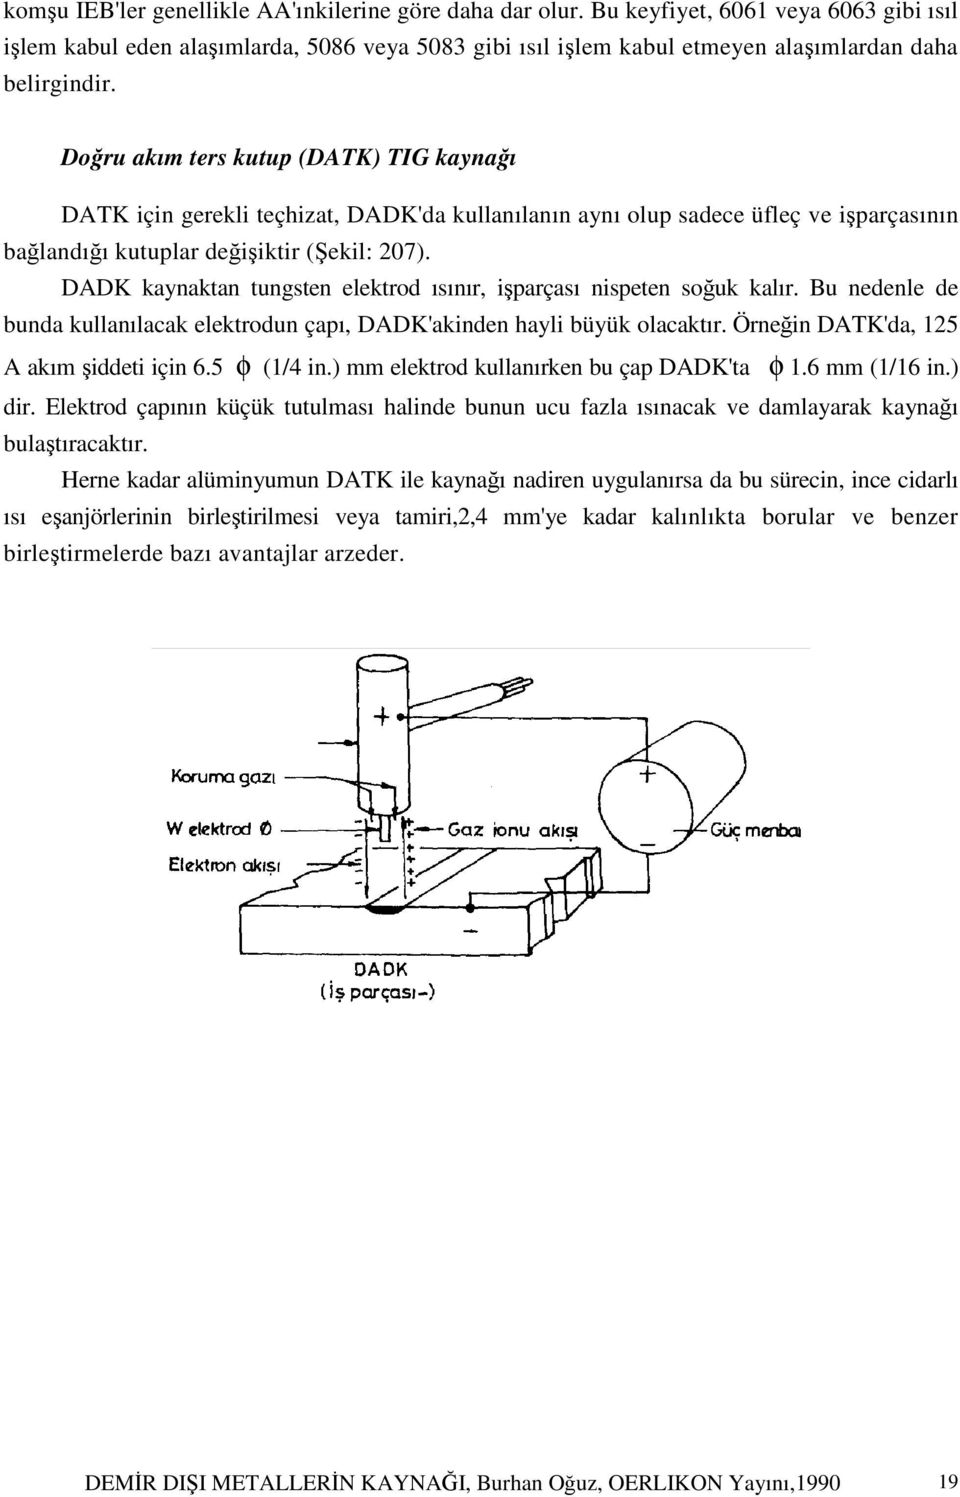 Doğru akım ters kutup (DATK) TIG kaynağı DATK için gerekli teçhizat, DADK'da kullanılanın aynı olup sadece üfleç ve işparçasının bağlandığı kutuplar değişiktir (Şekil: 207).